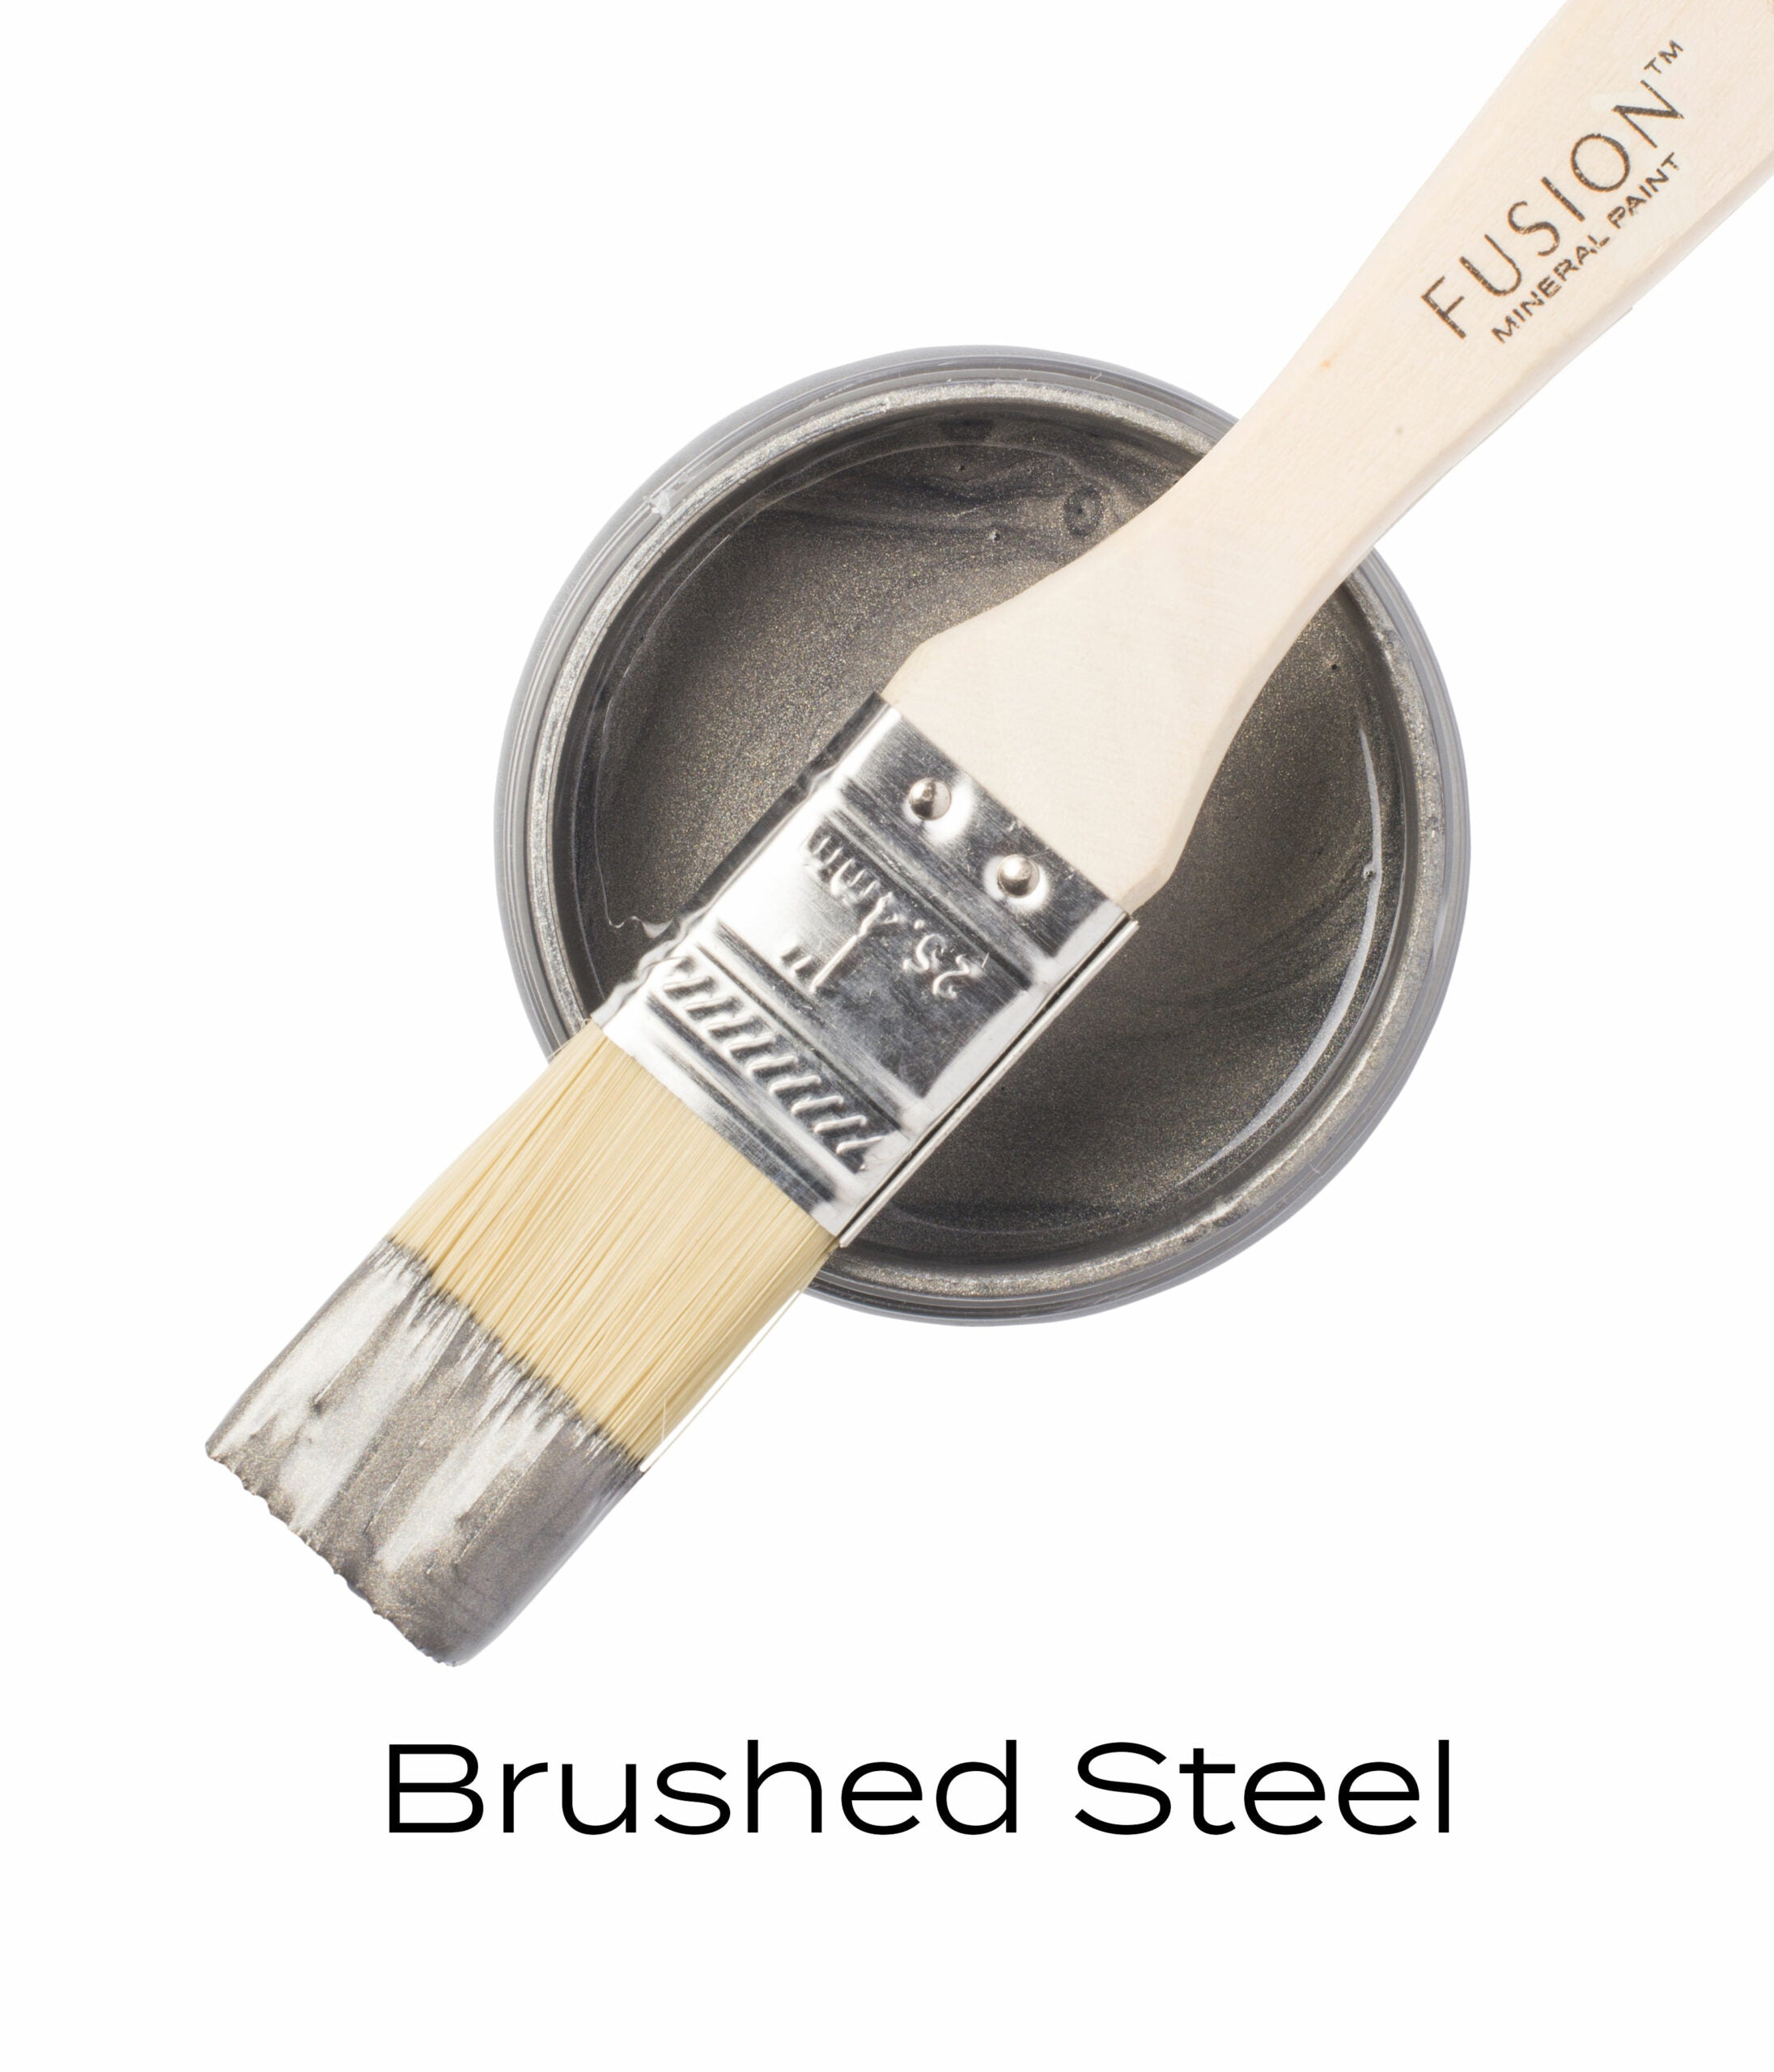 Brushed Steel Metallic